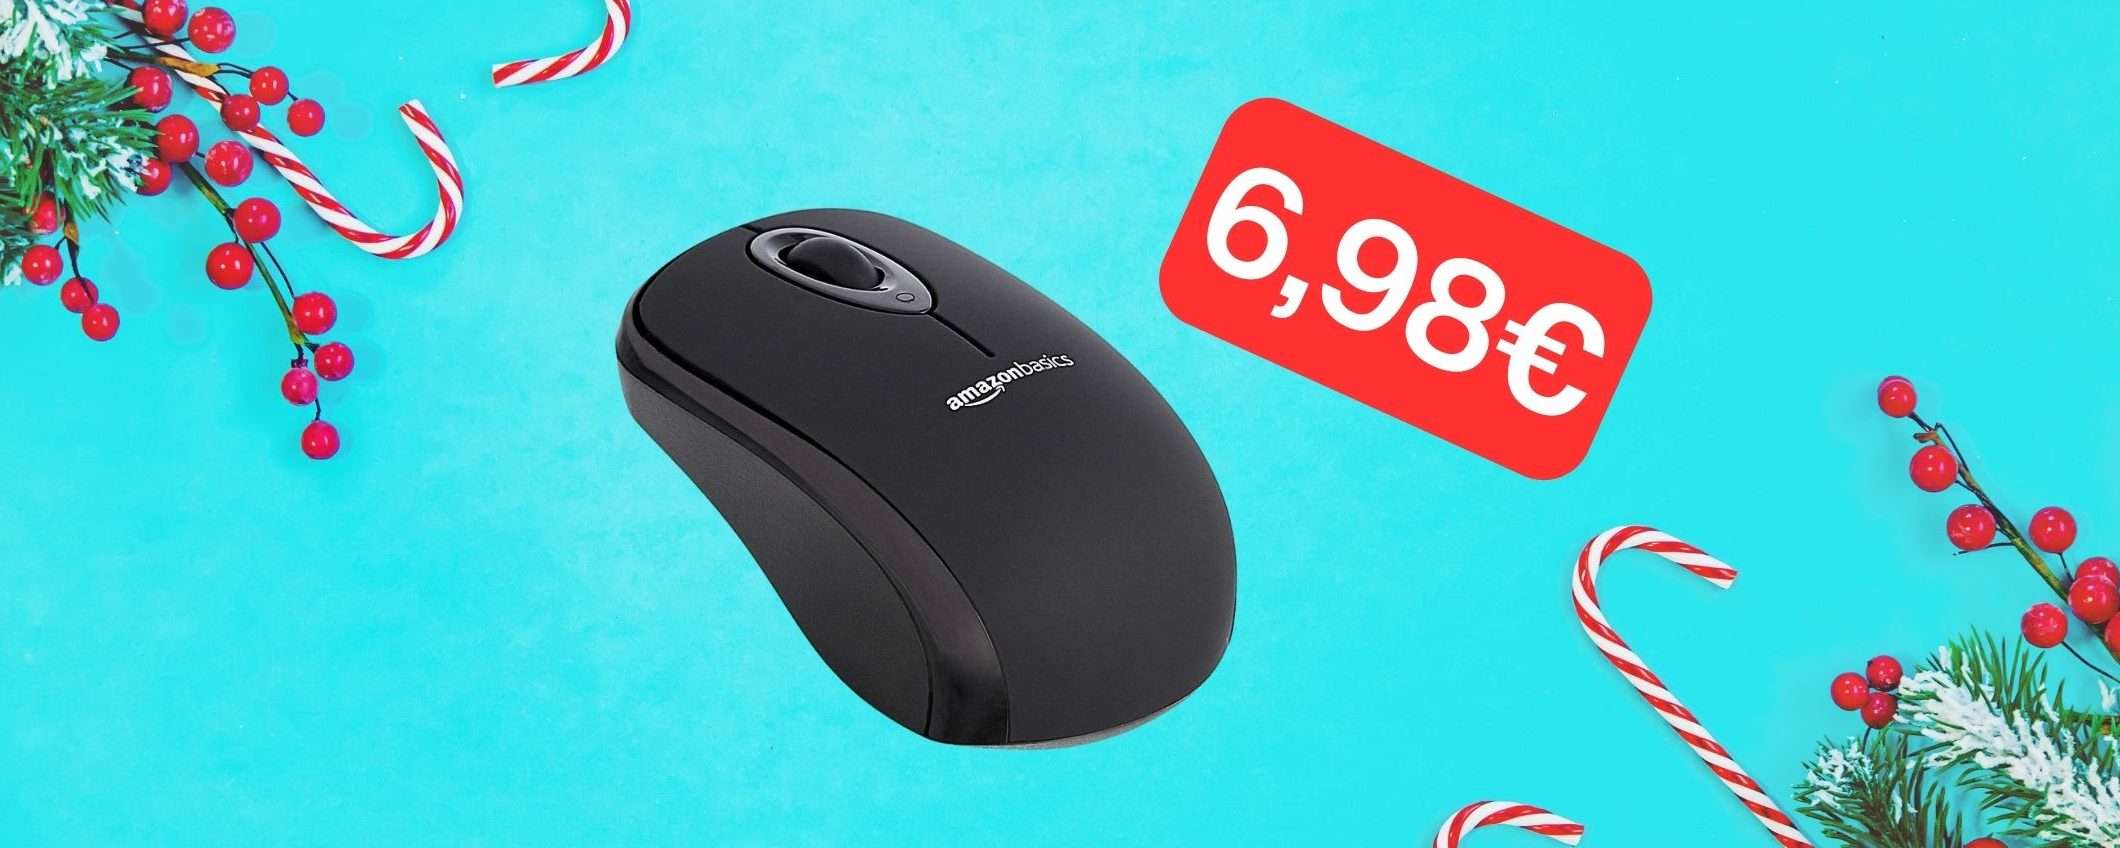 Regalo piccolo, ma utile: mouse senza fili in offerta a 6,98€